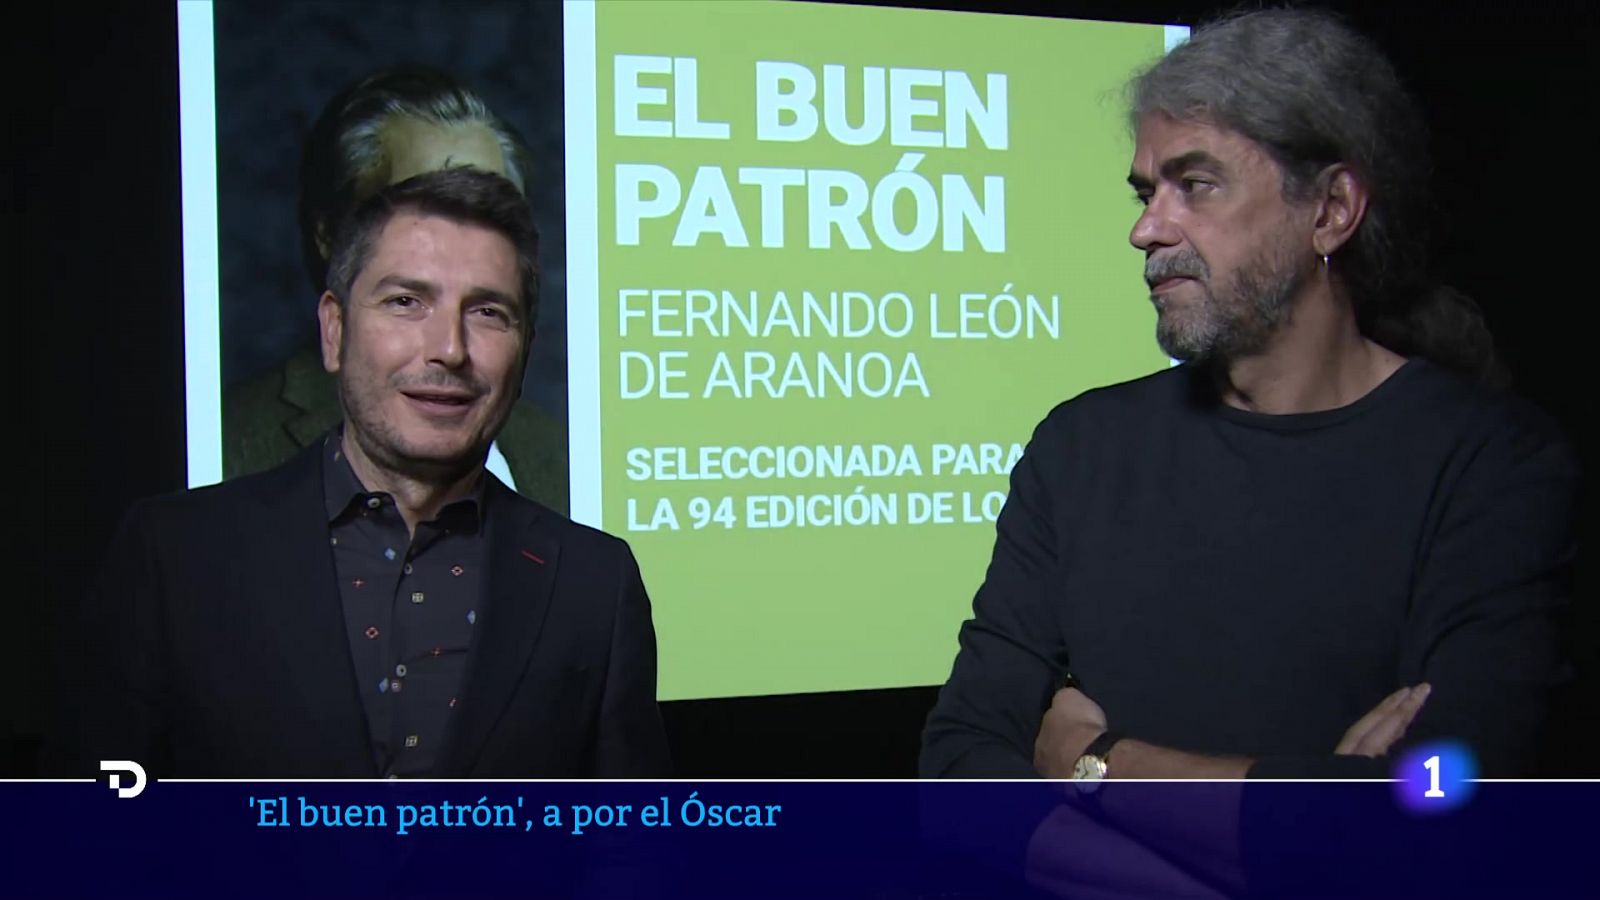 Fernando León de Aranoa: "'El buen patrón' se entenderá en cualquier país"